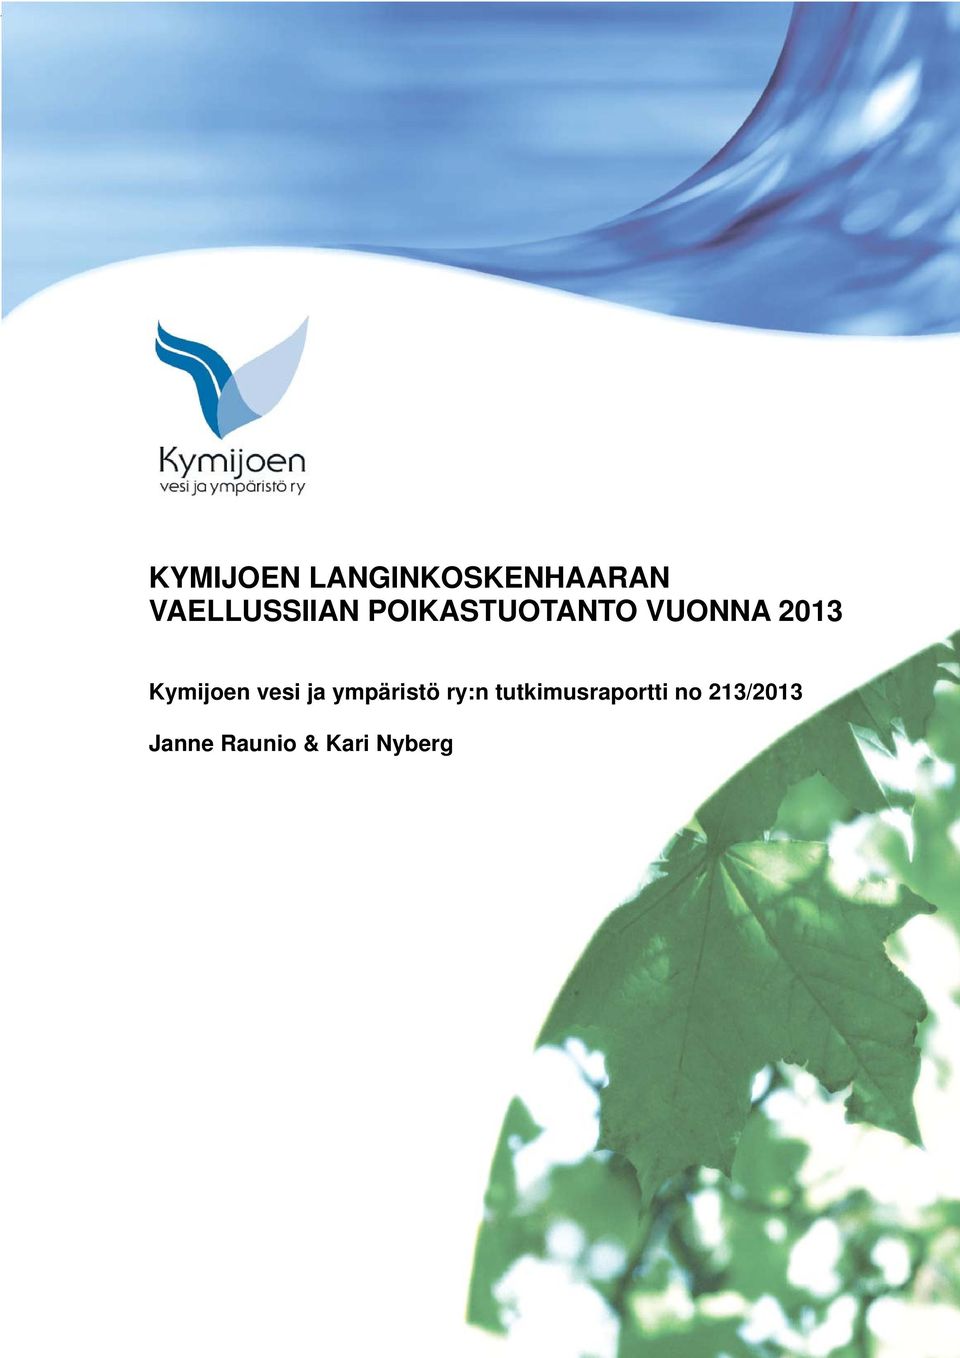 2013 Kymijoen vesi ja ympäristö ry:n